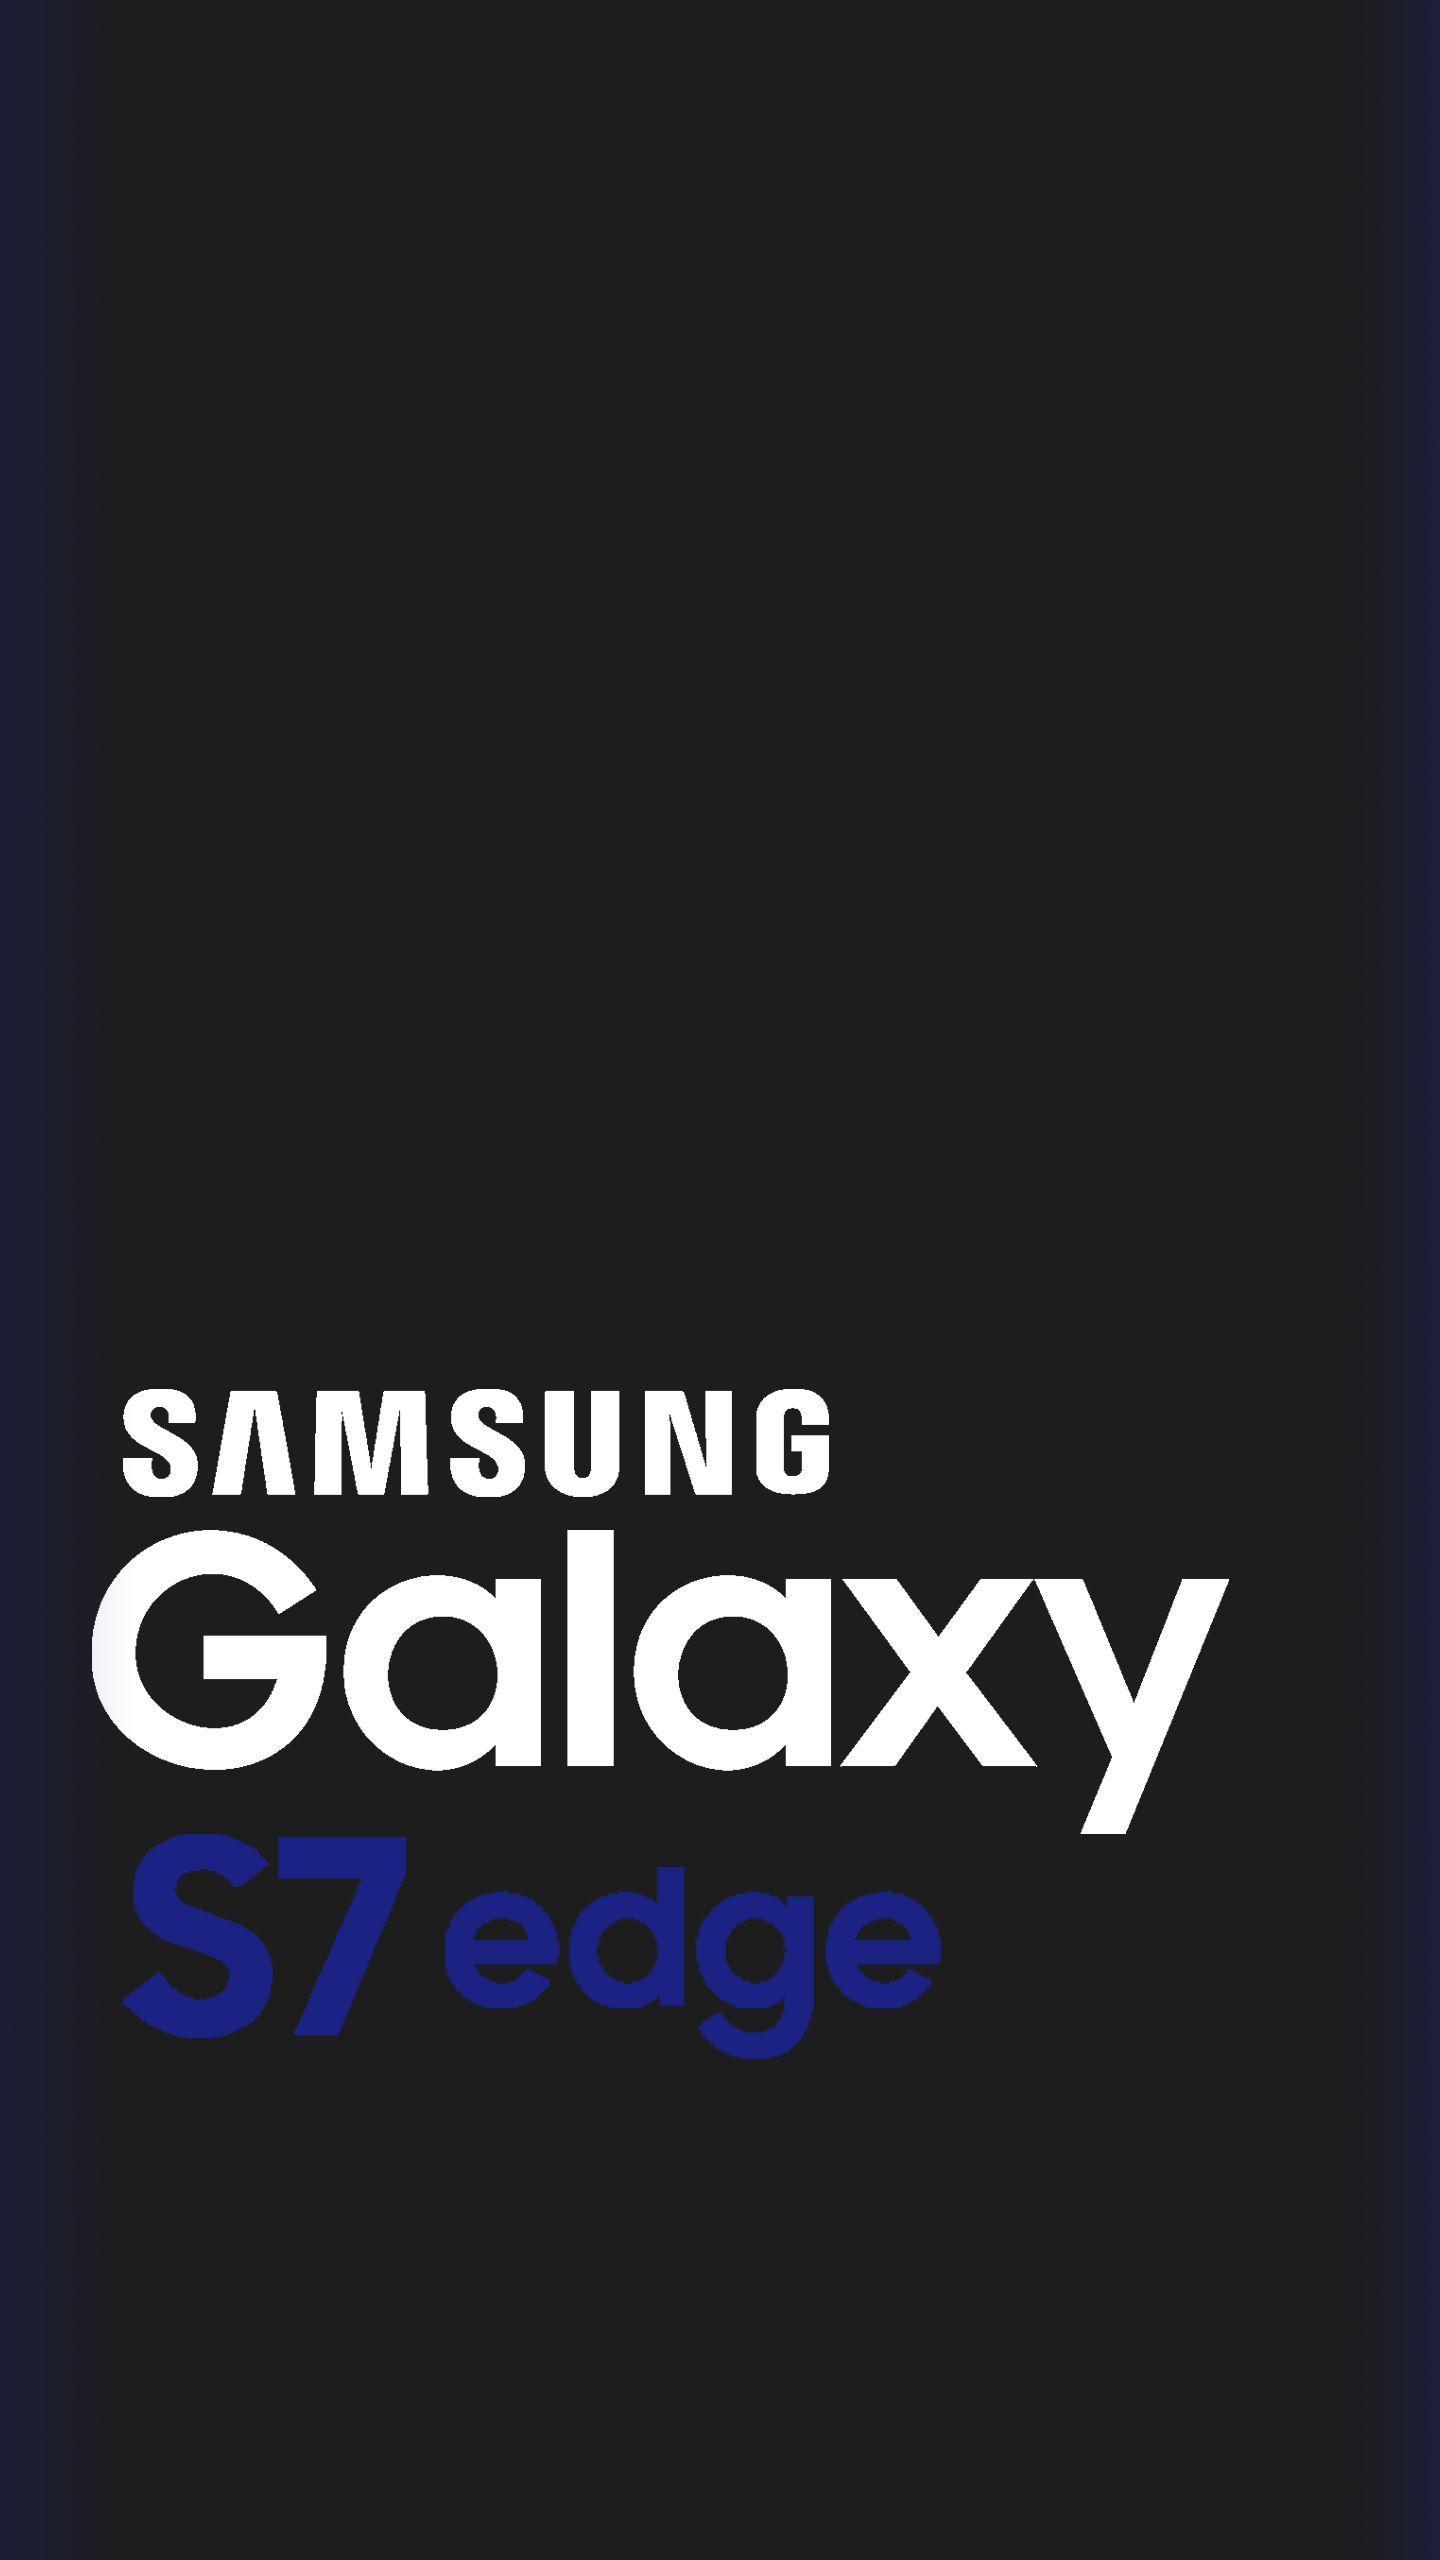 Samsung Galaxy S7 Edge Logo - Samsung Galaxy S7 Edge Wallpaper 9:16 QHD | Graphic Design ...